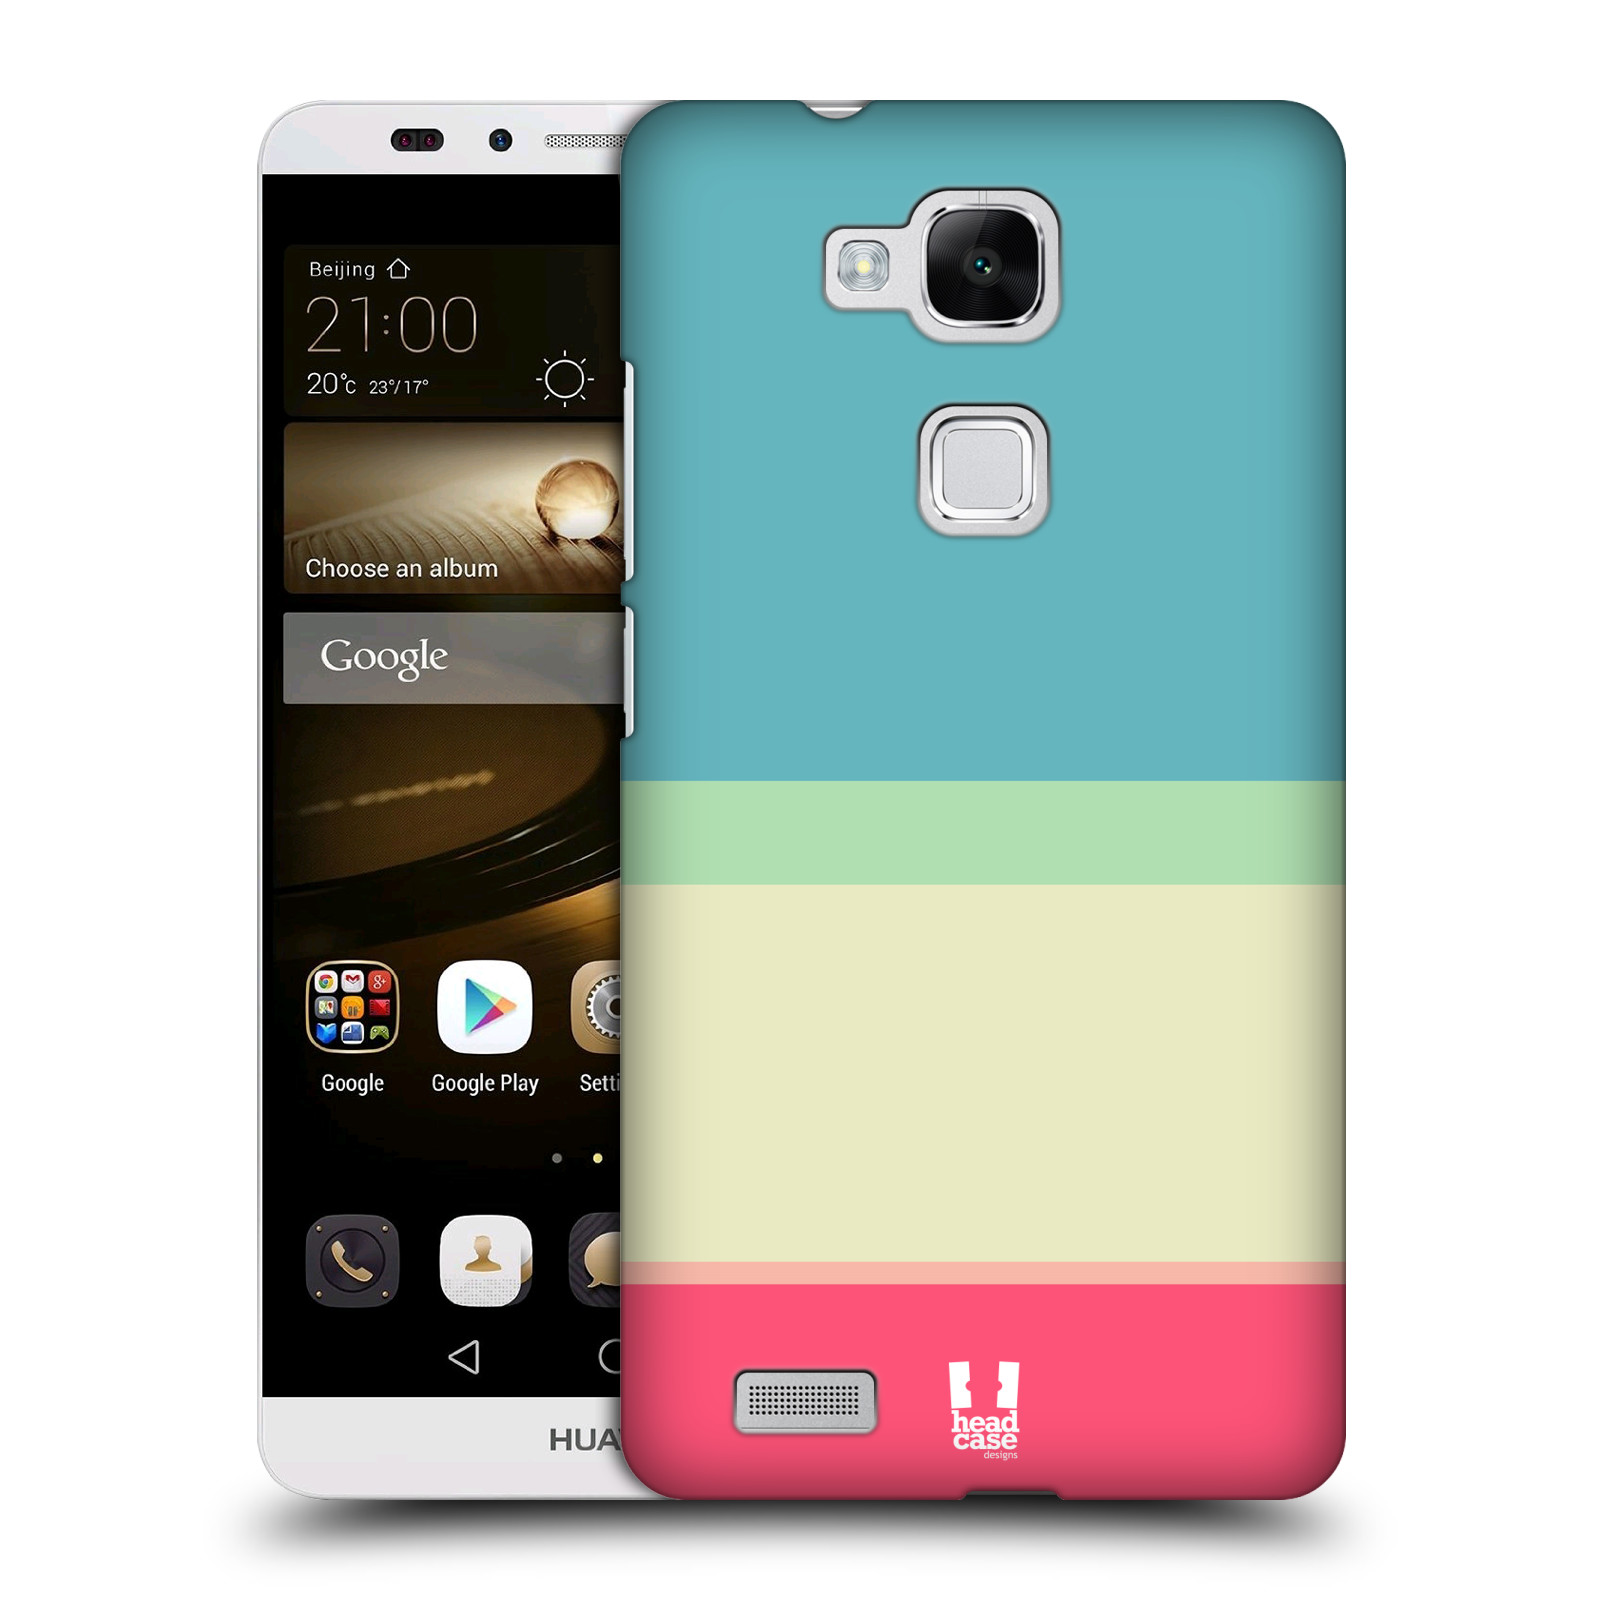 HEAD CASE plastový obal na mobil Huawei Mate 7 vzor Barevné proužky MODRÁ A RŮŽOVÁ